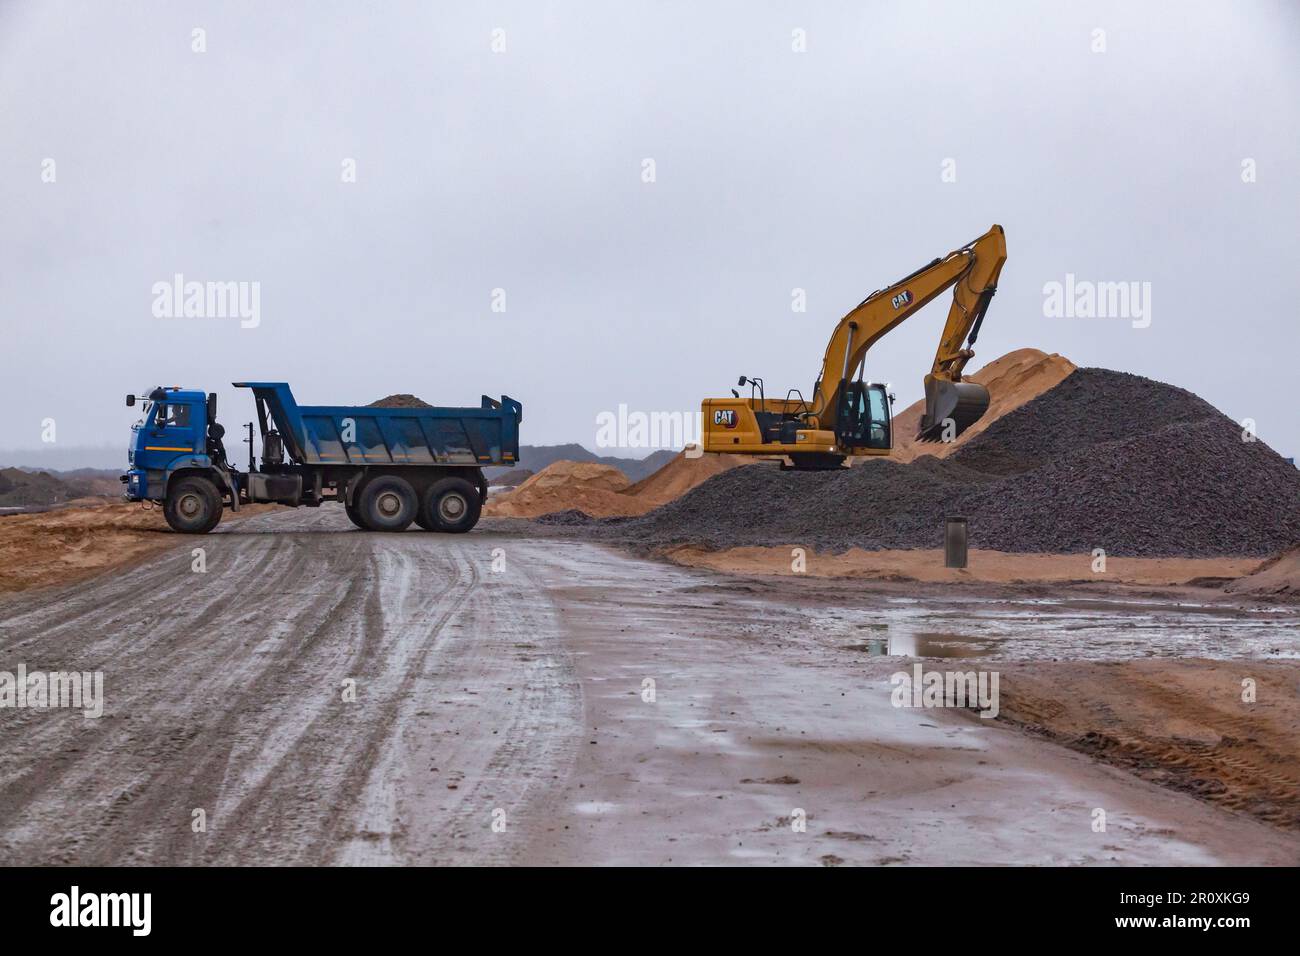 Ust-Luga, Leningrado oblast, Russia - 16 novembre 2021: L'escavatore Caterpillar carica la ghiaia nel dumper. Strada a terra bagnata in primo piano. Foto Stock